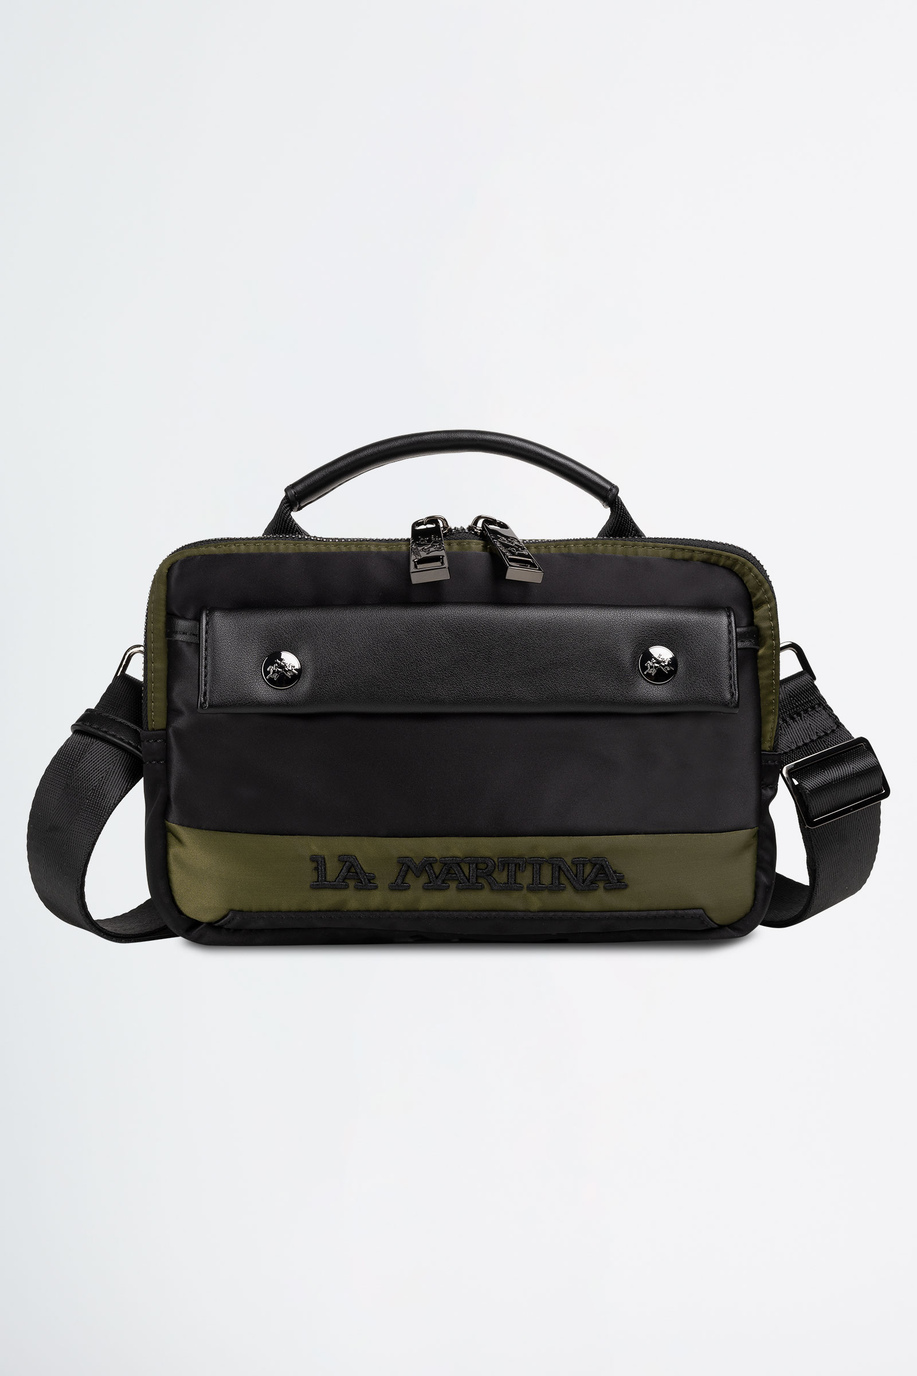 Shoulder bag in fabric - test | La Martina - Official Online Shop